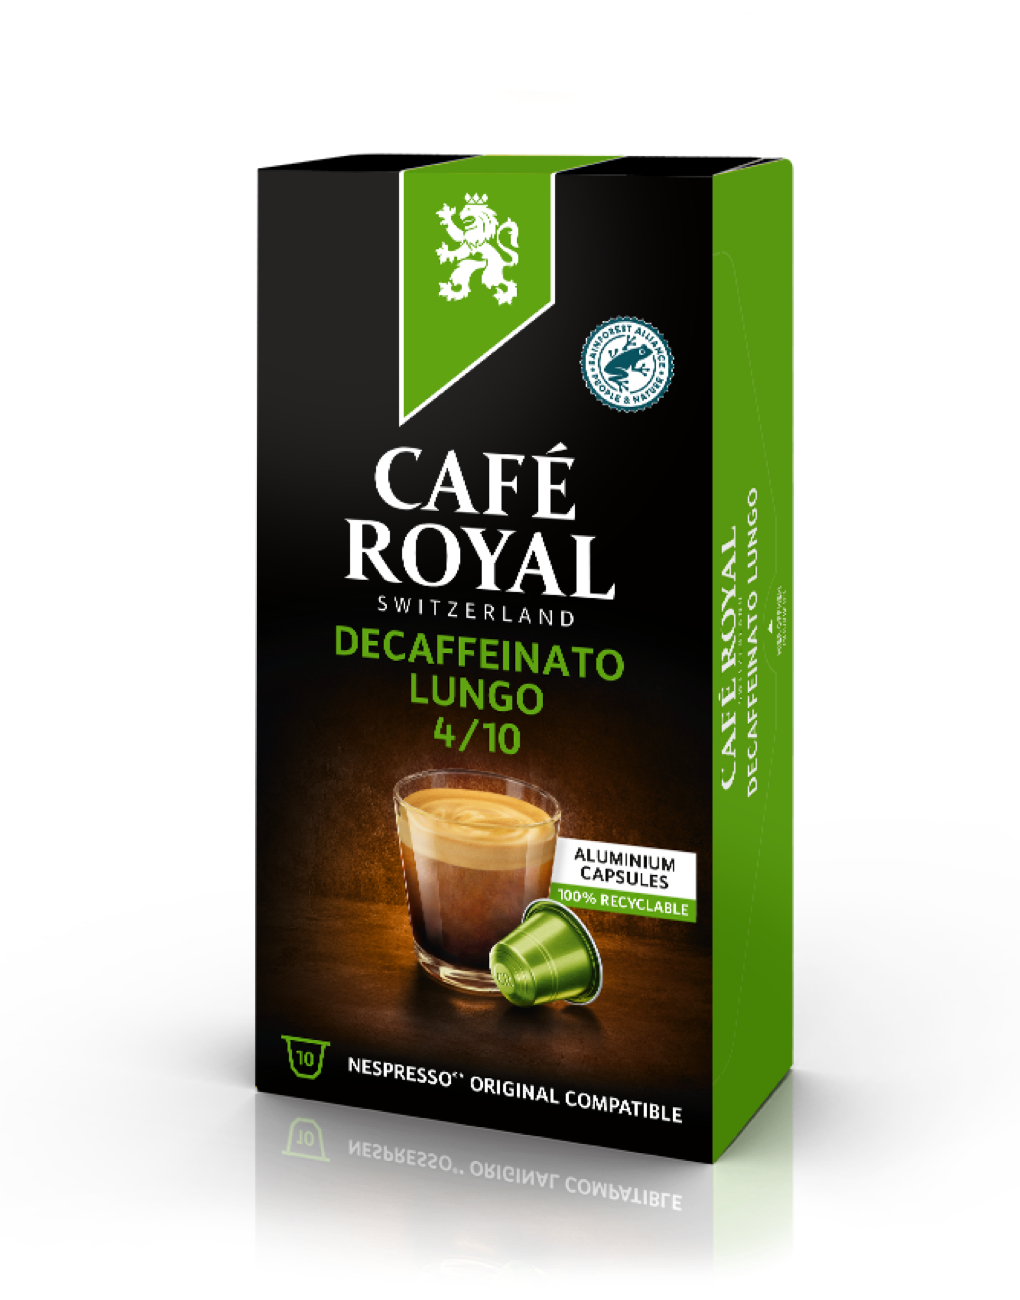 Café Royal Decaffeinato Lungo